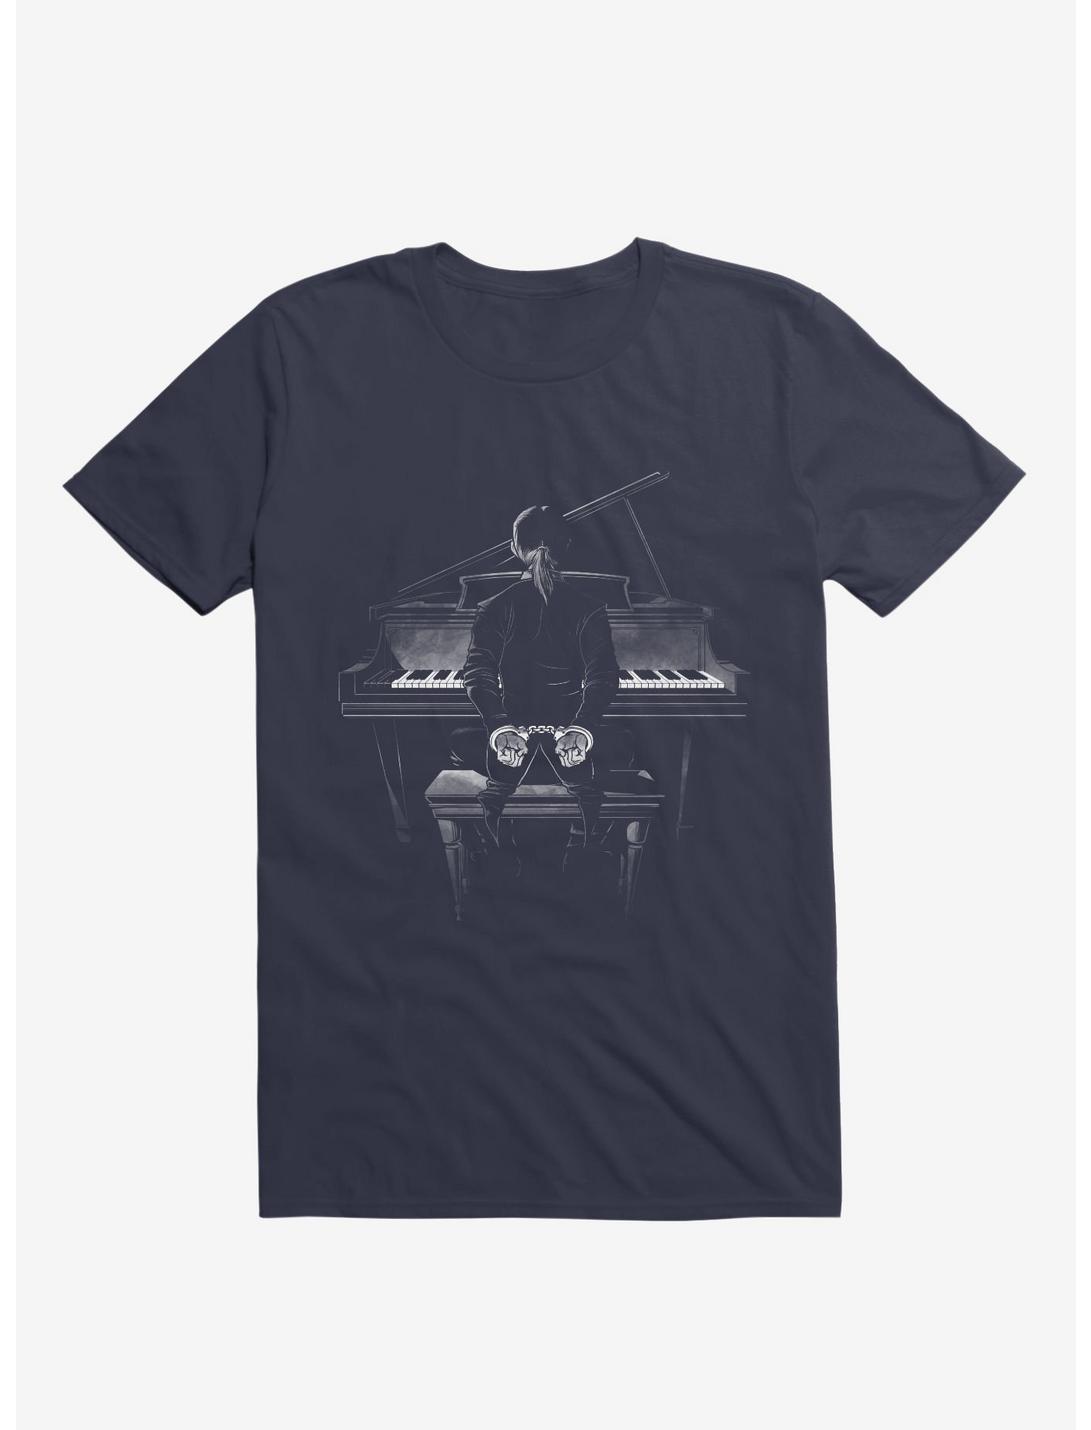 Locked Piano Key T-Shirt, NAVY, hi-res